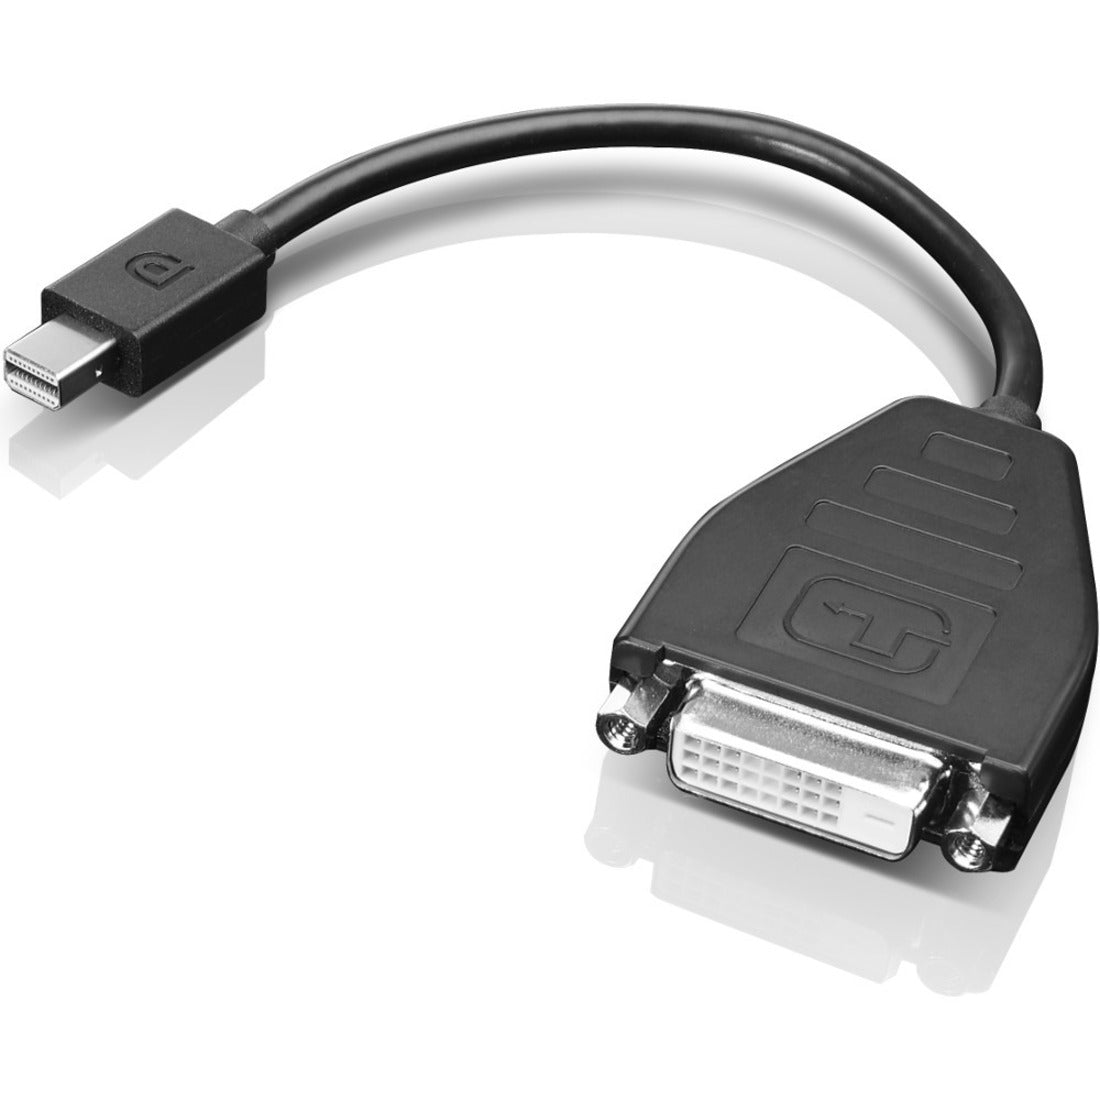 Lenovo 0B47090 Mini-DisplayPort -näyttö DVI-D -sovitinkaapeli (yksinkertainen linkki) yhdistä laitteesi helposti